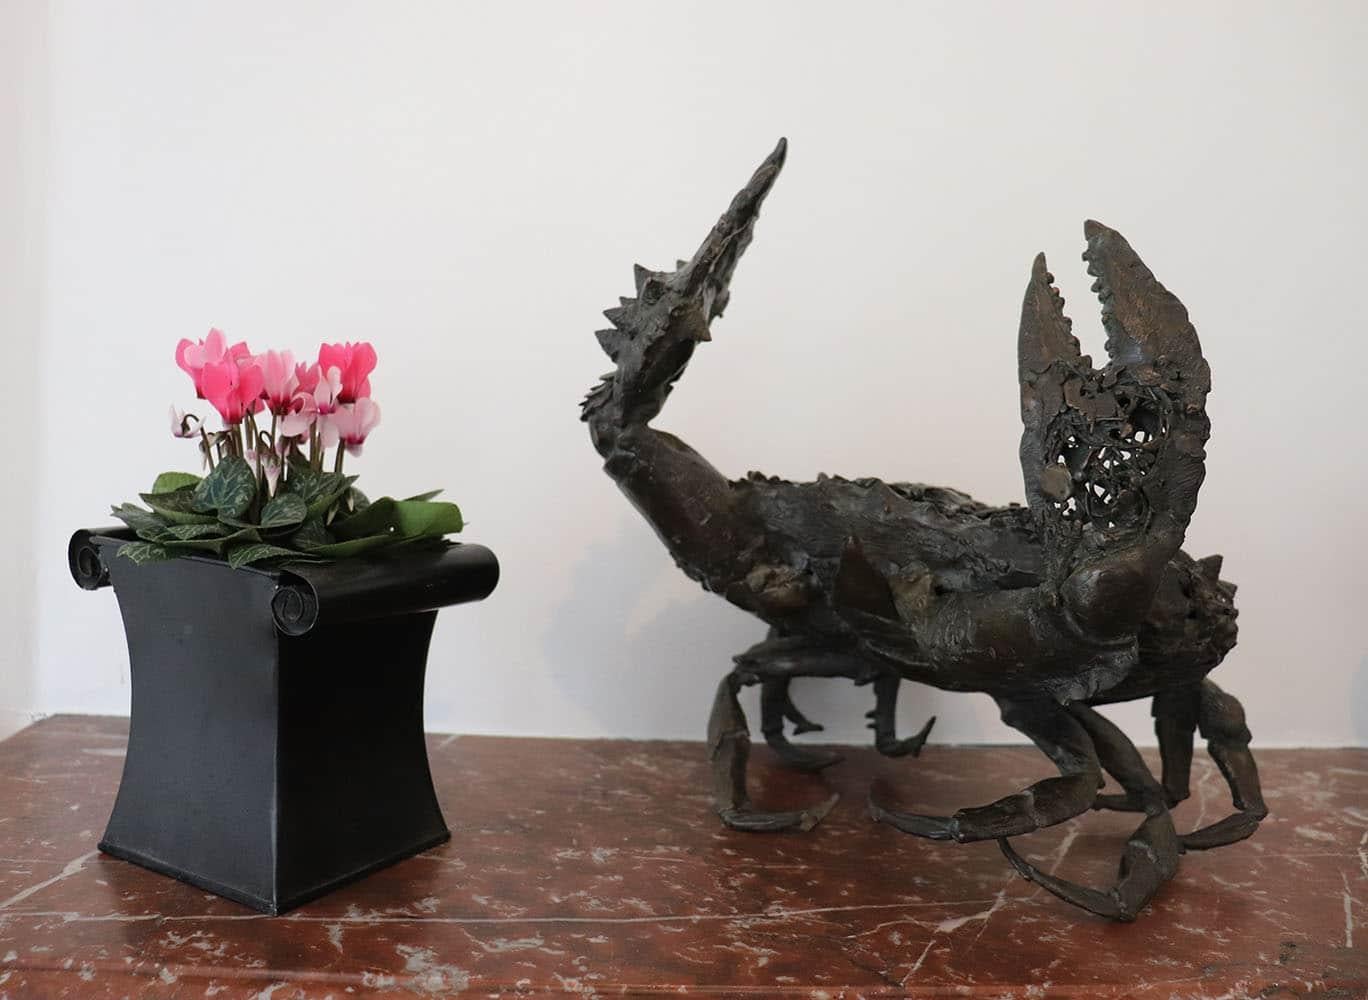 La Crabe aux pattelas est une sculpture en bronze unique de l'artiste contemporain Chésade, dont les dimensions sont de 38 × 31 × 30 cm (15 × 12,2 × 11,8 in). La sculpture est signée et accompagnée d'un certificat d'authenticité.

Cette sculpture